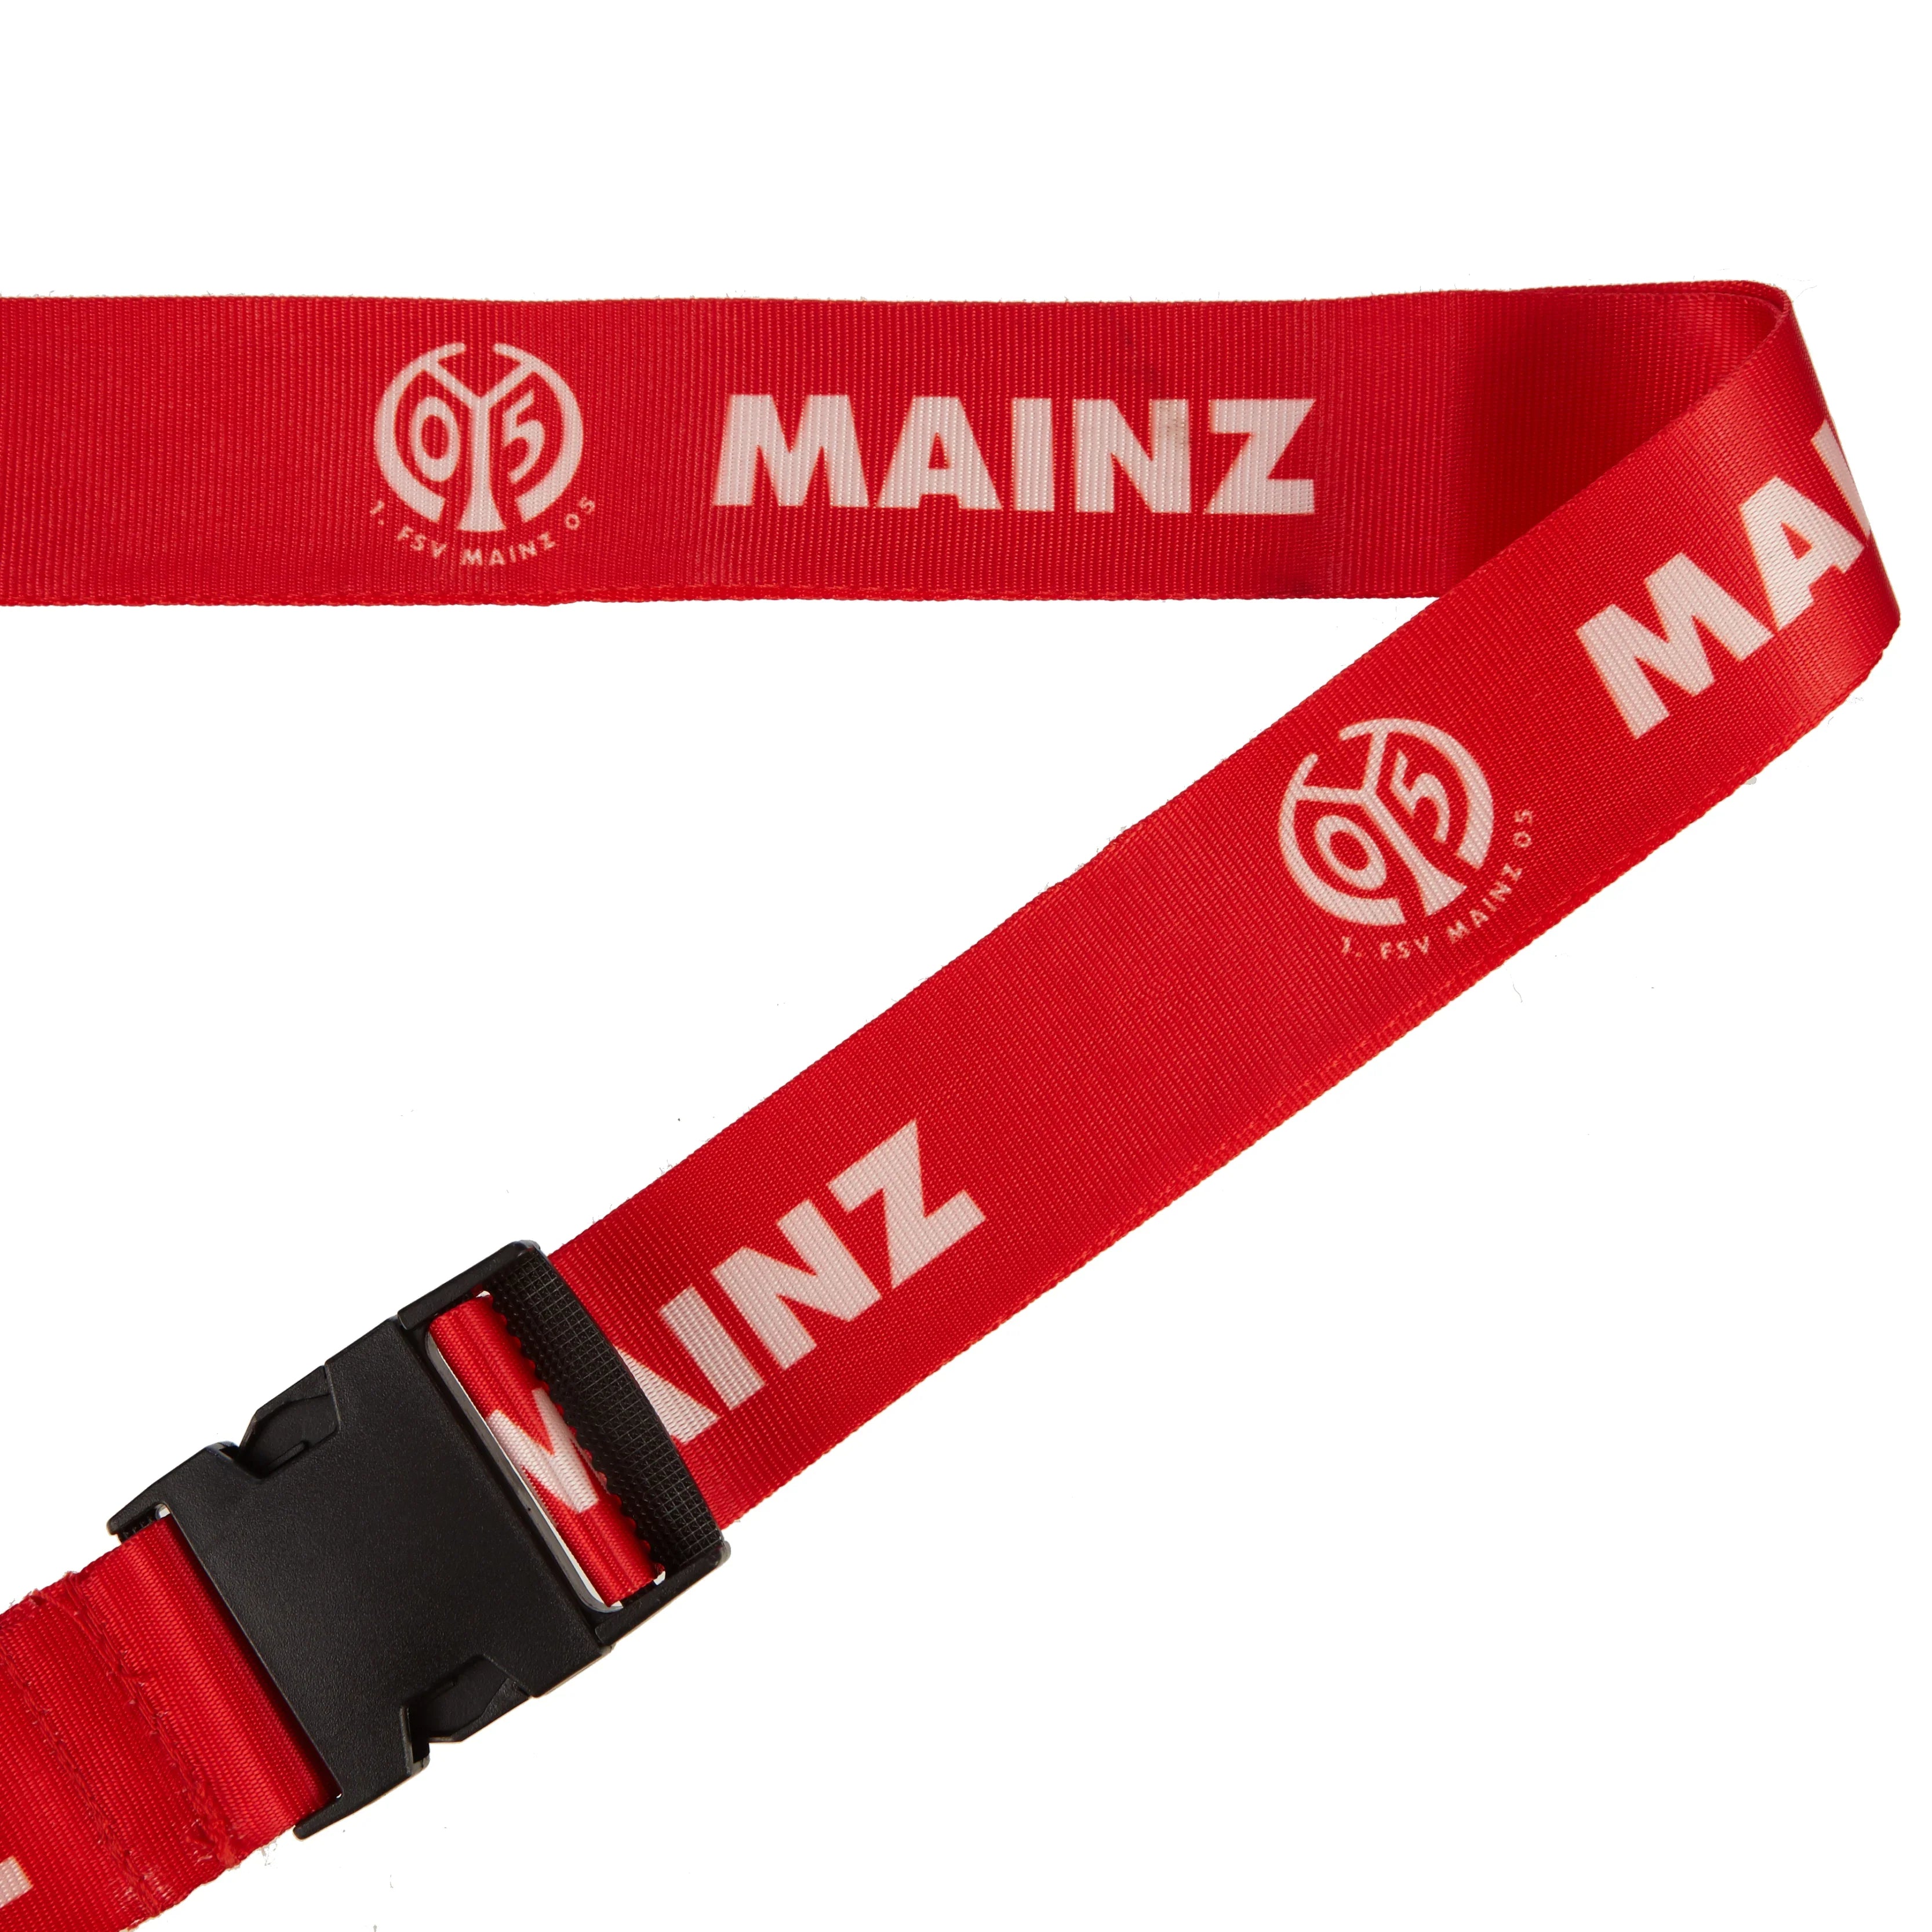 My club Mainz 05 luggage strap 180 cm - Mainz 05